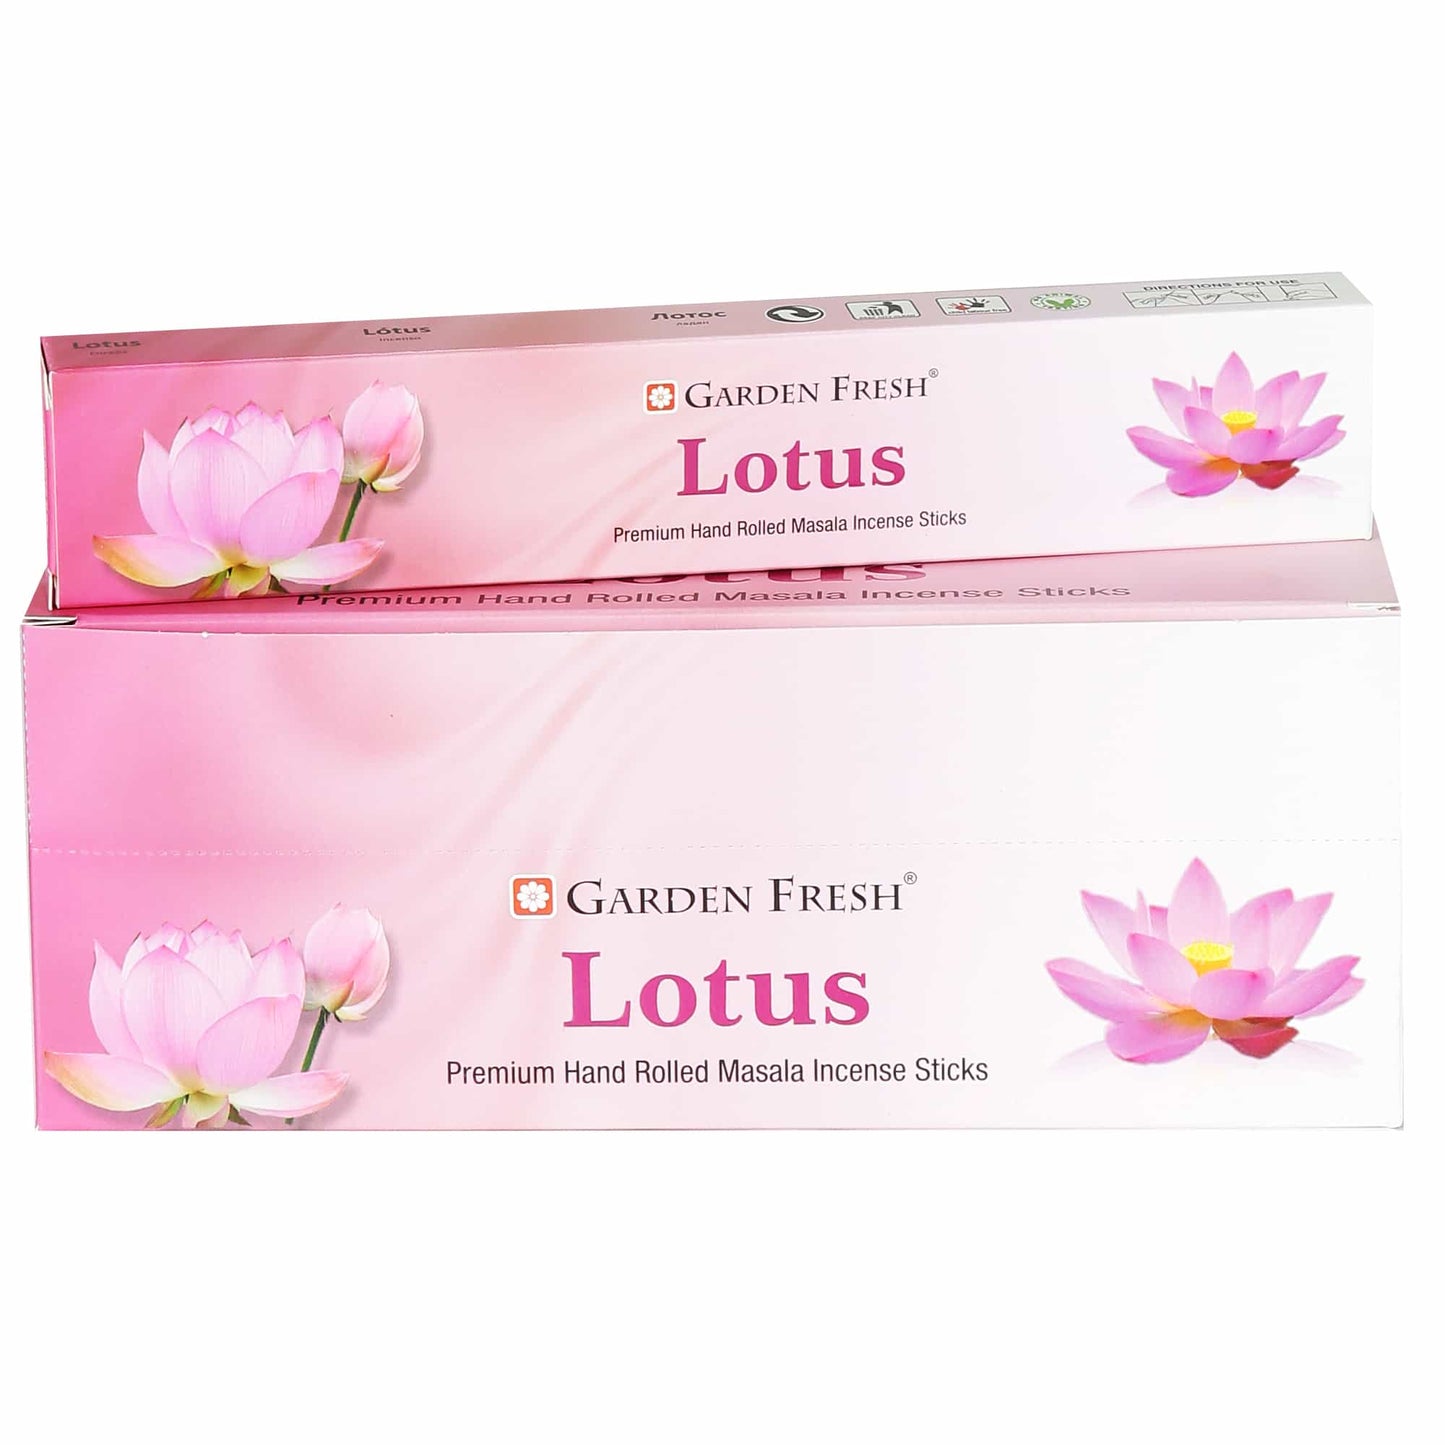 Lotus masala incense sticks